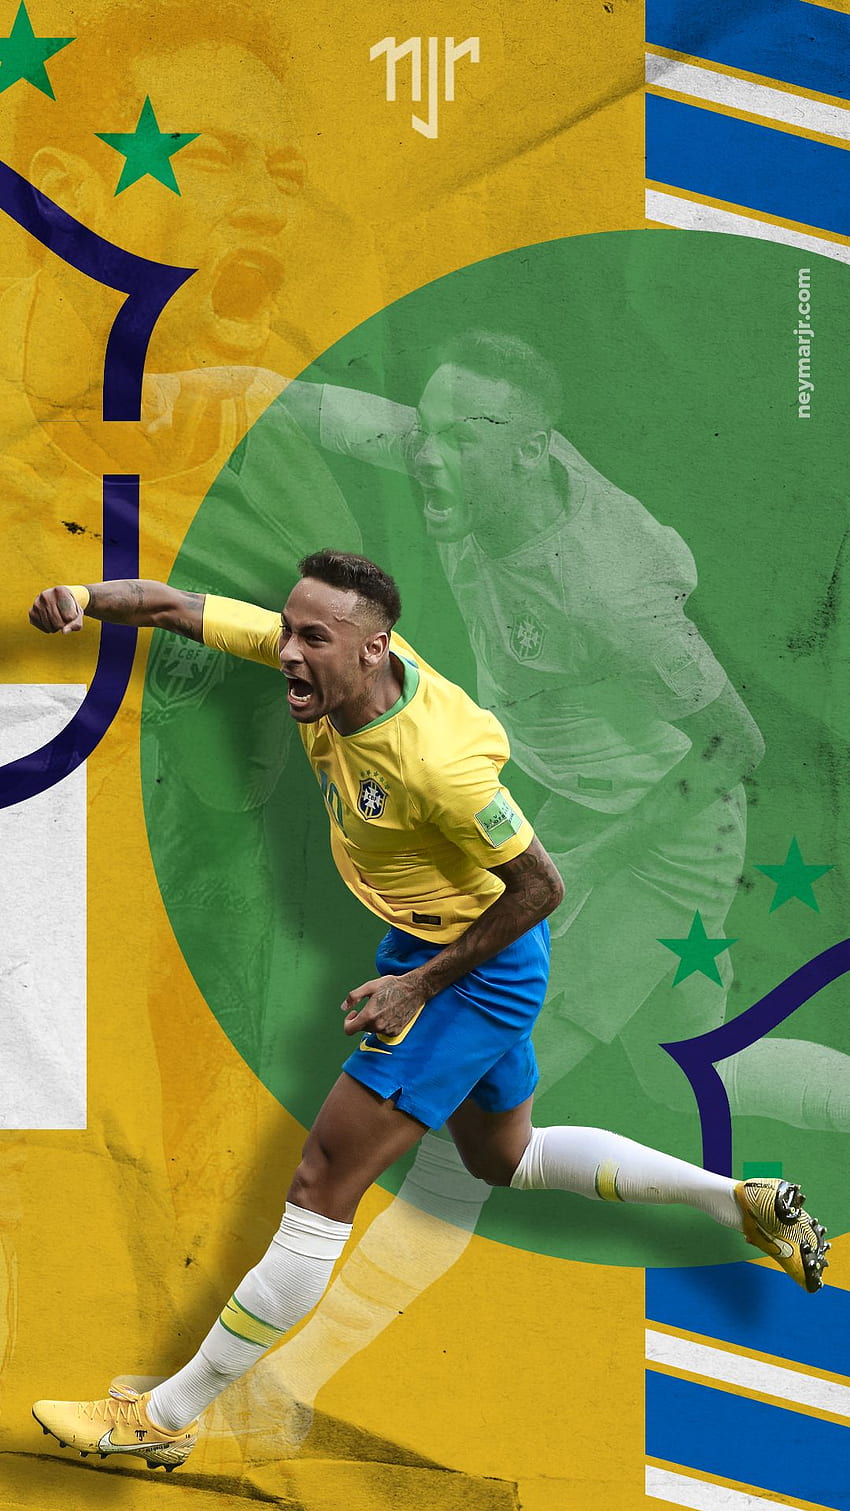 خلفيات 4k صور للكمبيوتر والجوال Wallpapers - خلفيات نيمار 2024 مع البرازيل Neymar Wallpaper 4k